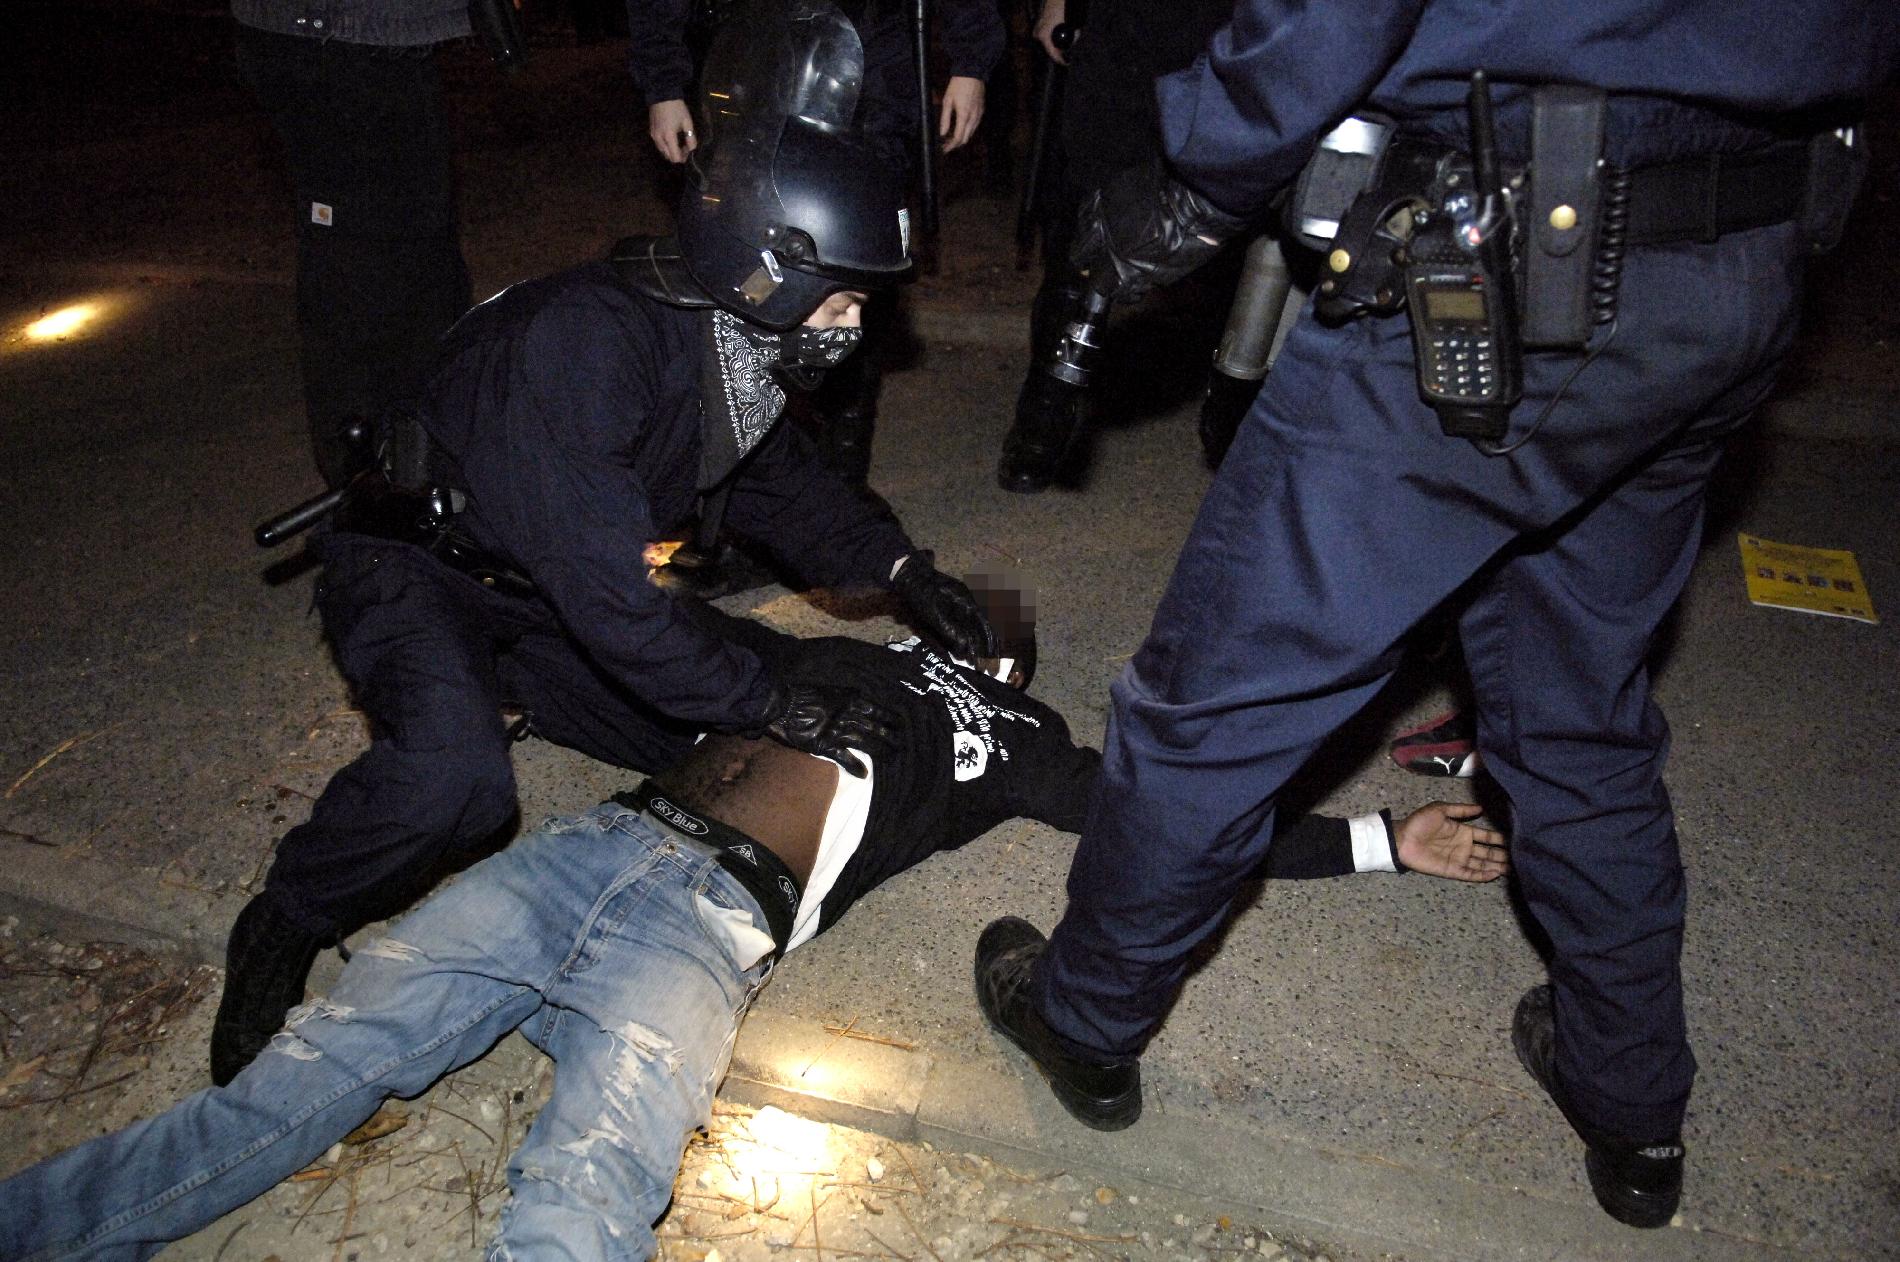 Elfogadhatónak tartja a rendőri erőszakot a francia kormányfő